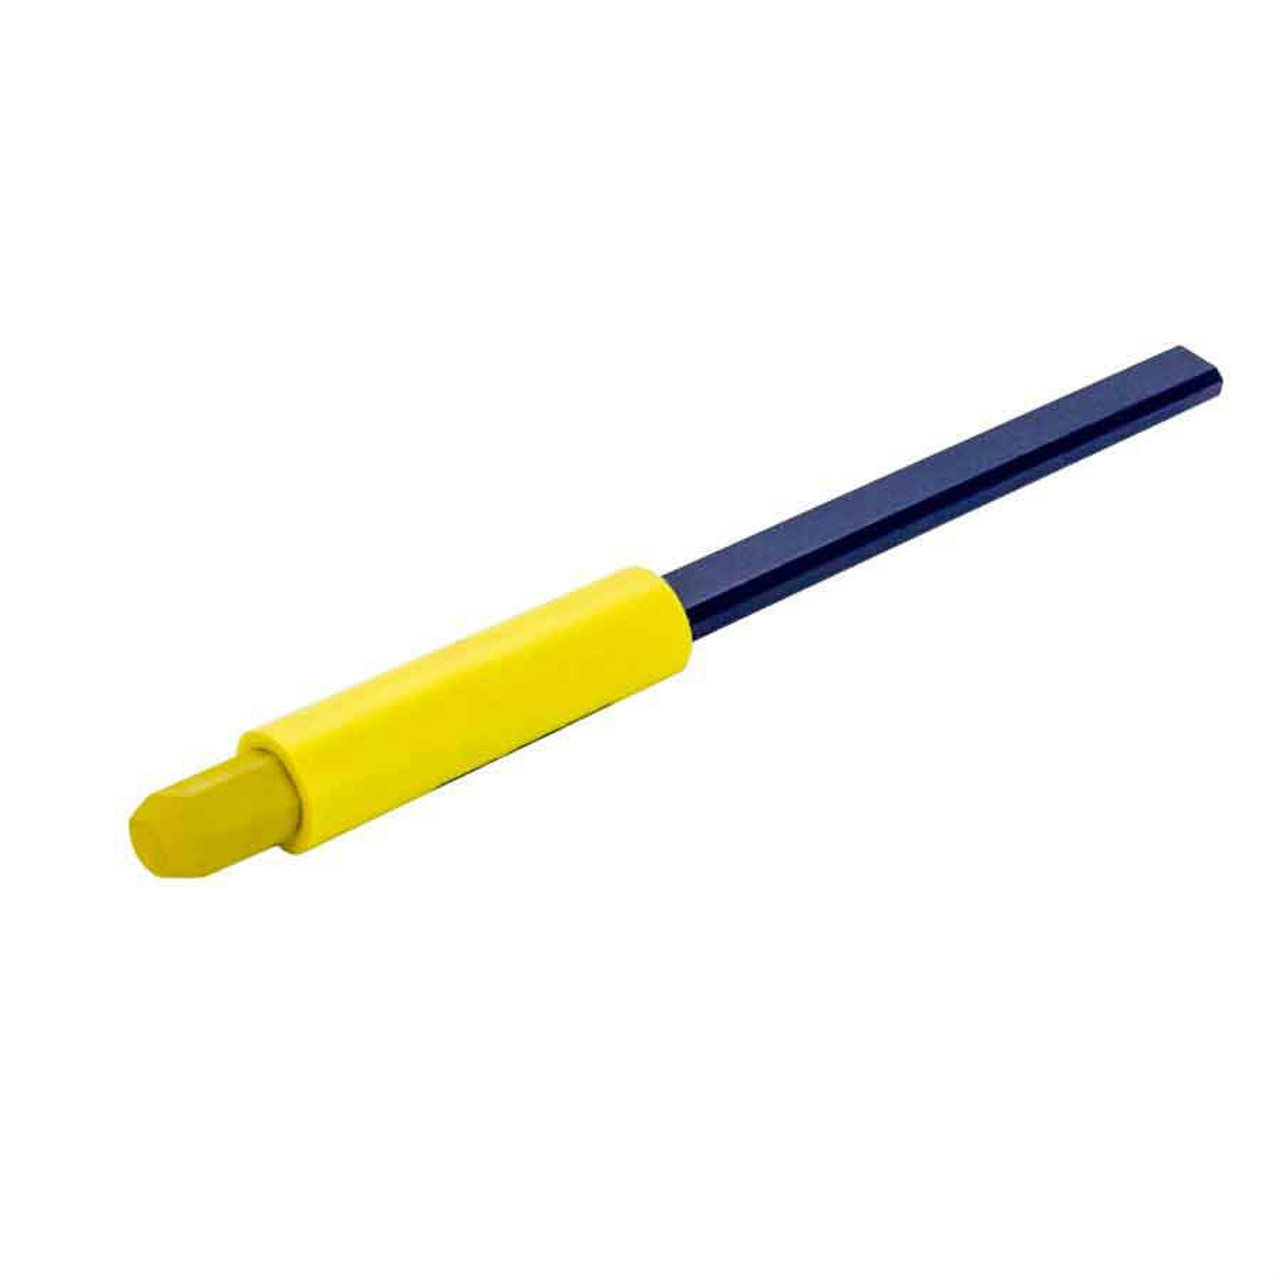 Bon Tool 84-291 Carpenter Pencil & Lumber Crayon Combo - Yellow